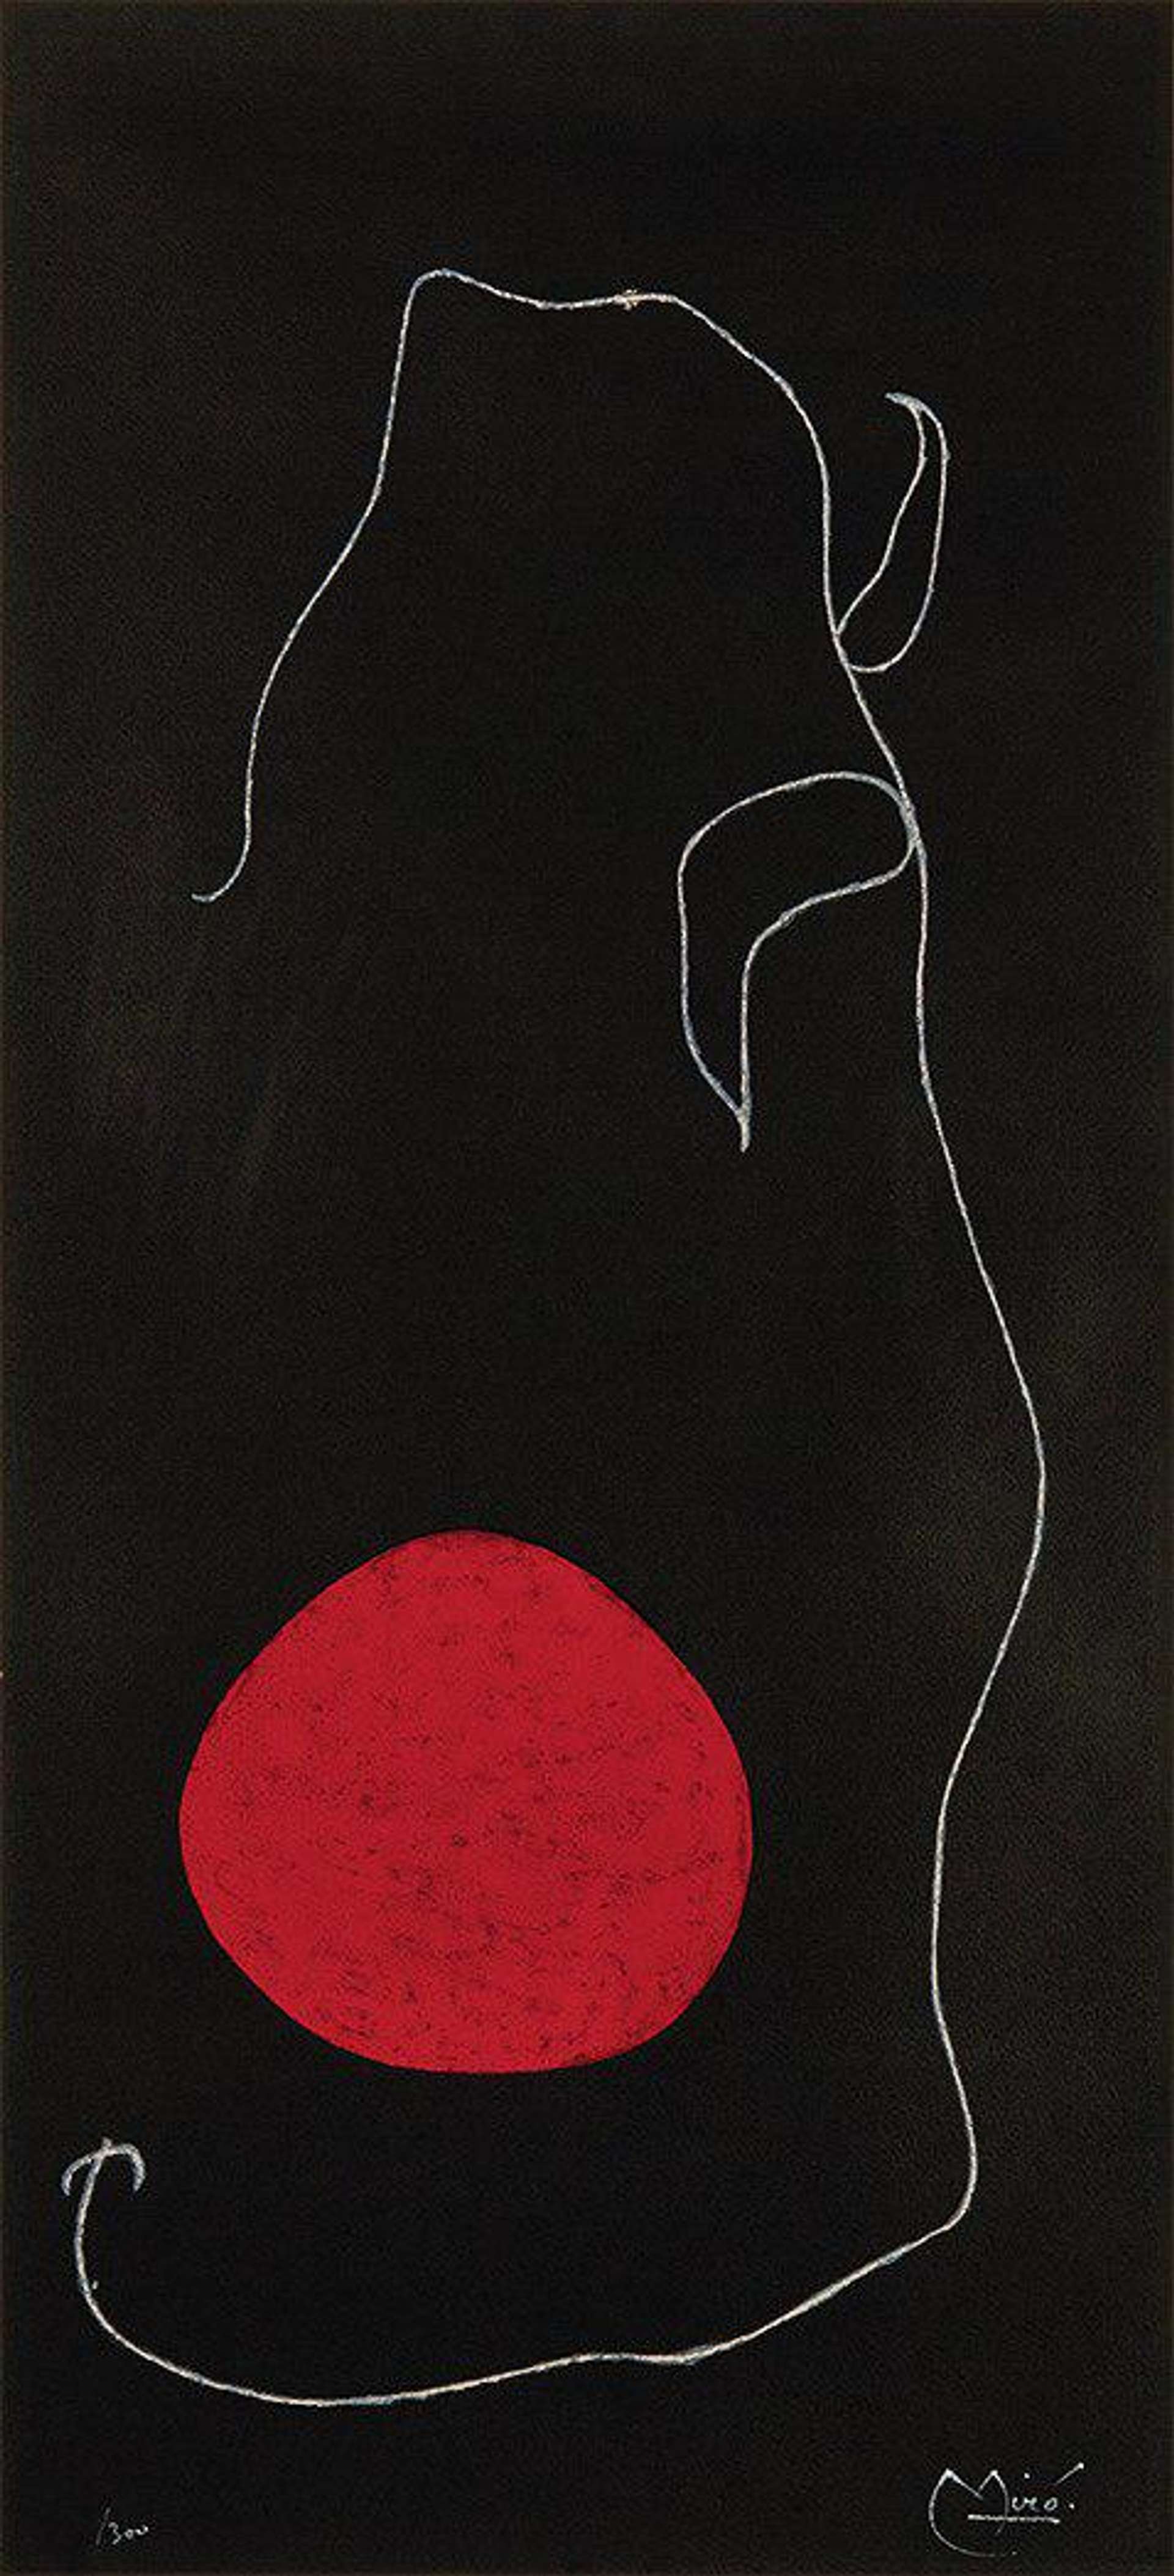 Oiseau Devant Le Soleil - Signed Print by Joan Miró 1961 - MyArtBroker